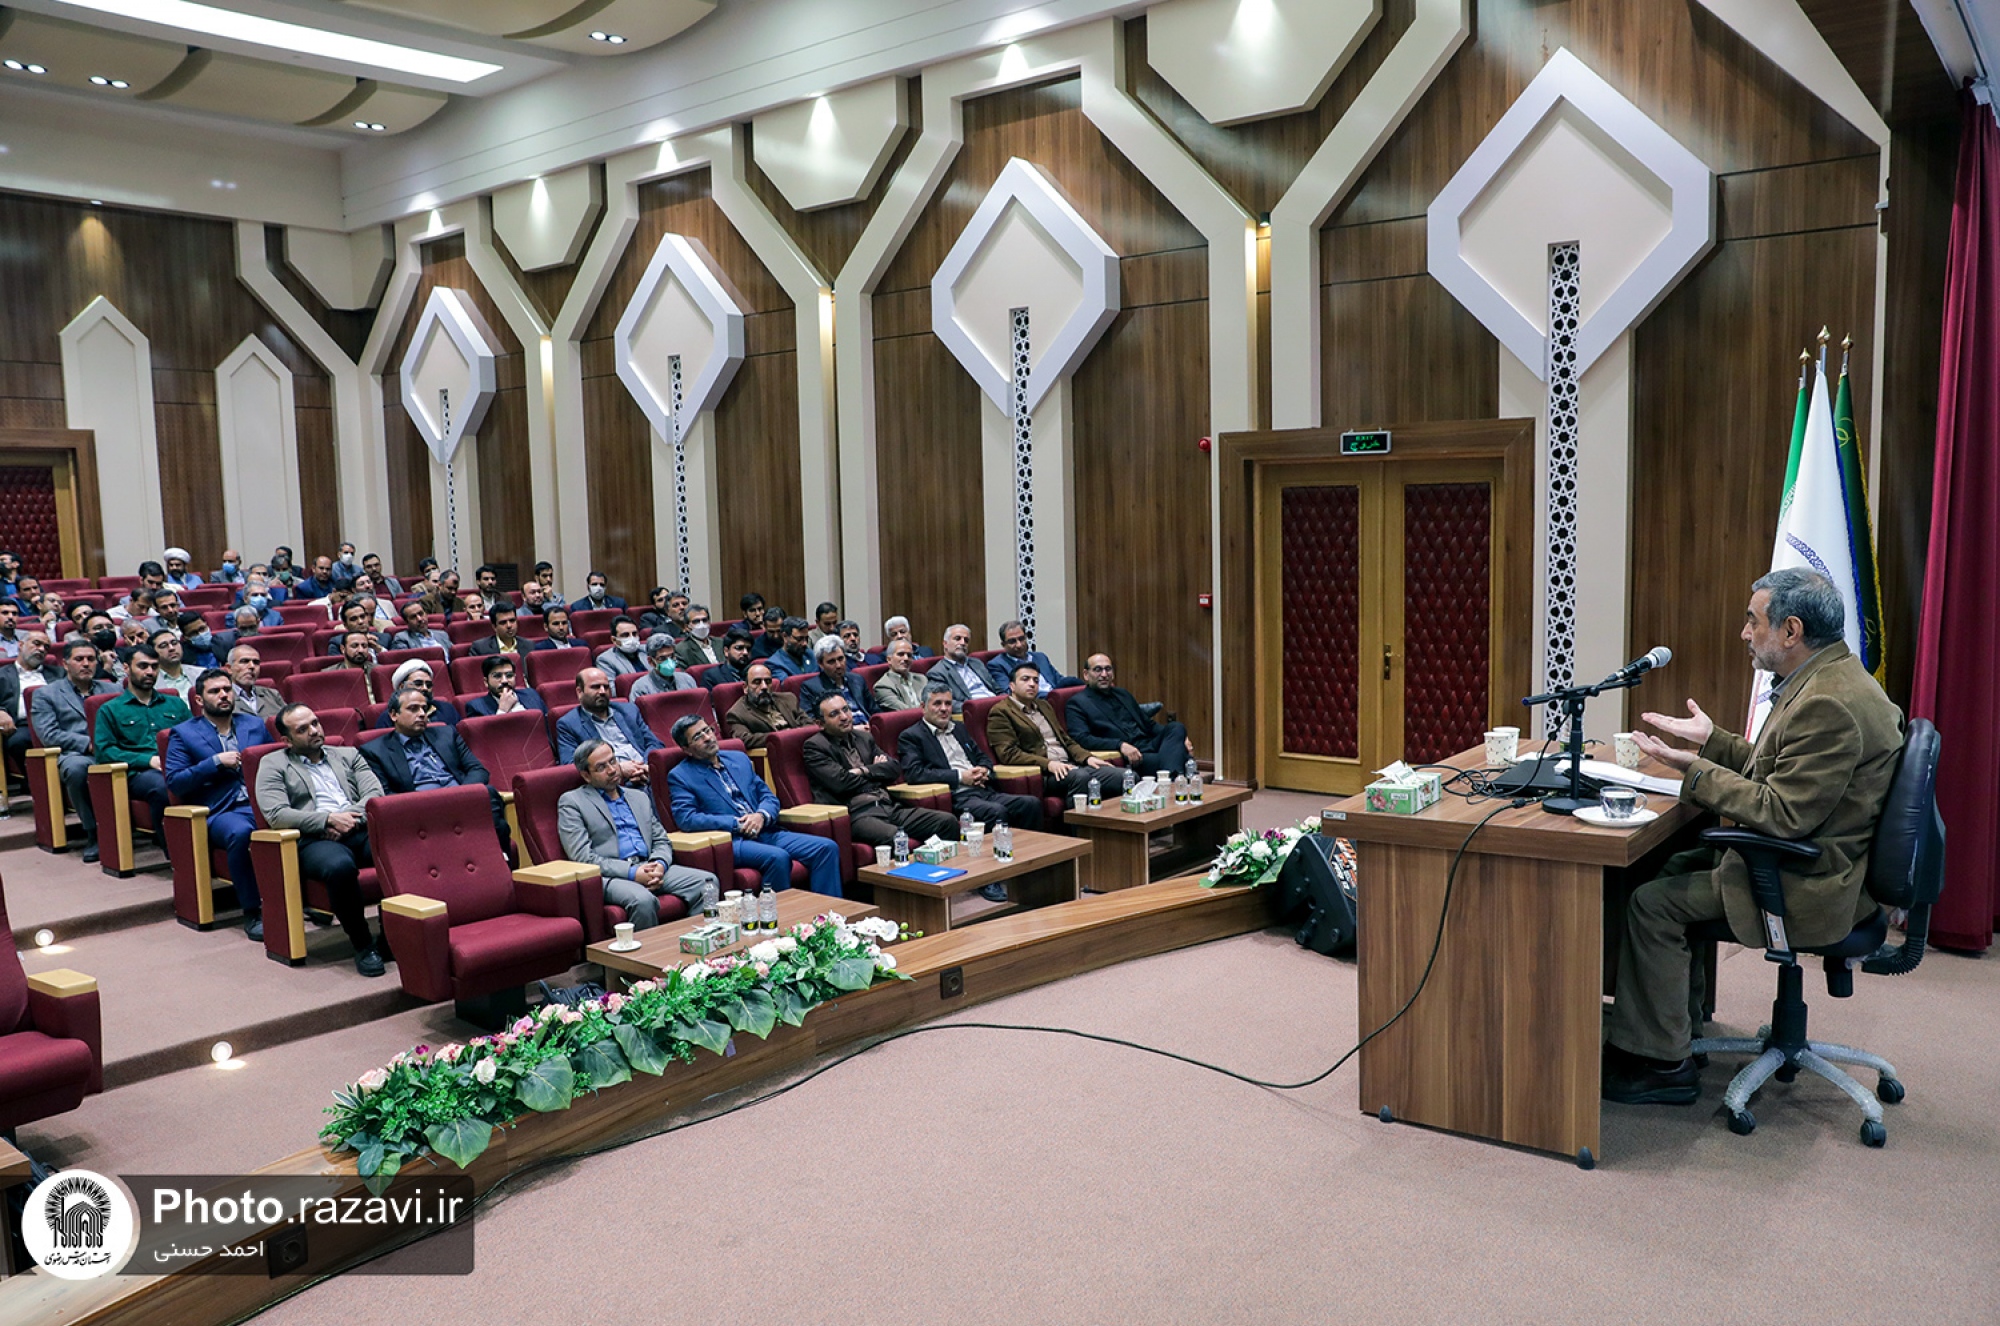 نشست بصیرتی دست بیگانه - تحلیل حوادث اخیر و نقش آفرینی استادان دانشگاه در جهاد تبیین